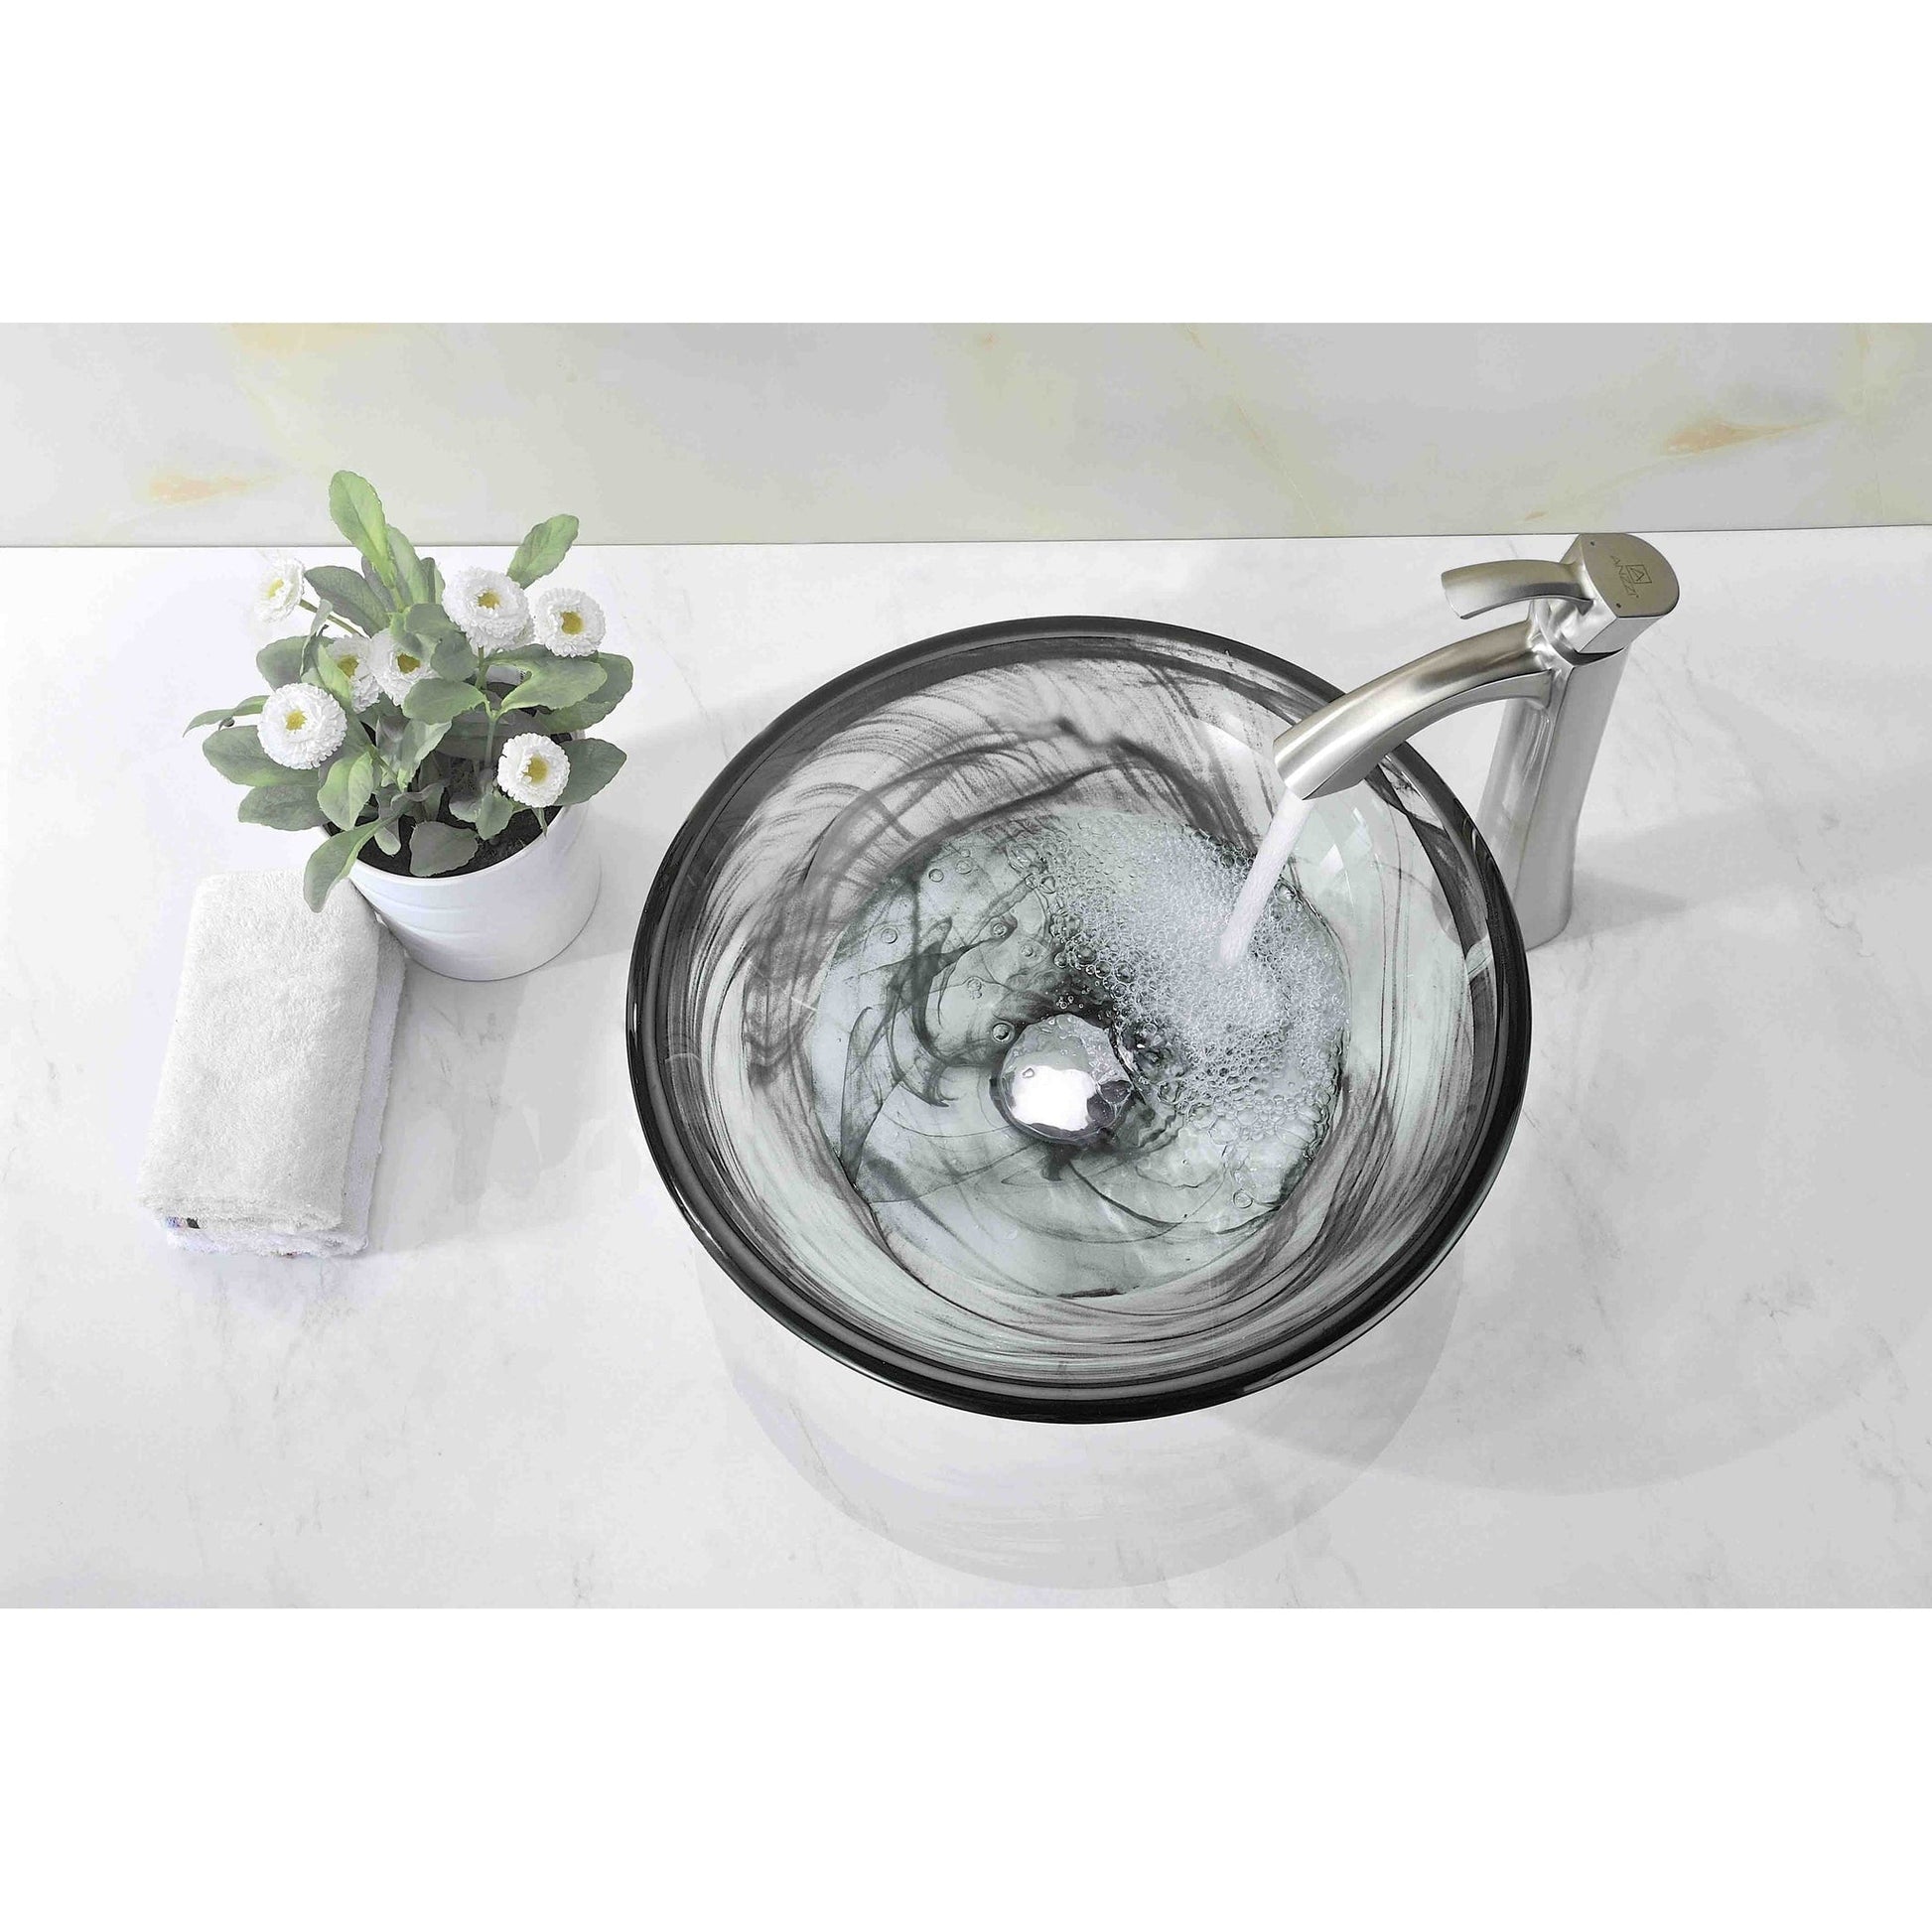 ANZZI Mezzo Series 17" x 17" Round Slumber Wisp Deco-Glass Vessel Sink With Polished Chrome Pop-Up Drain